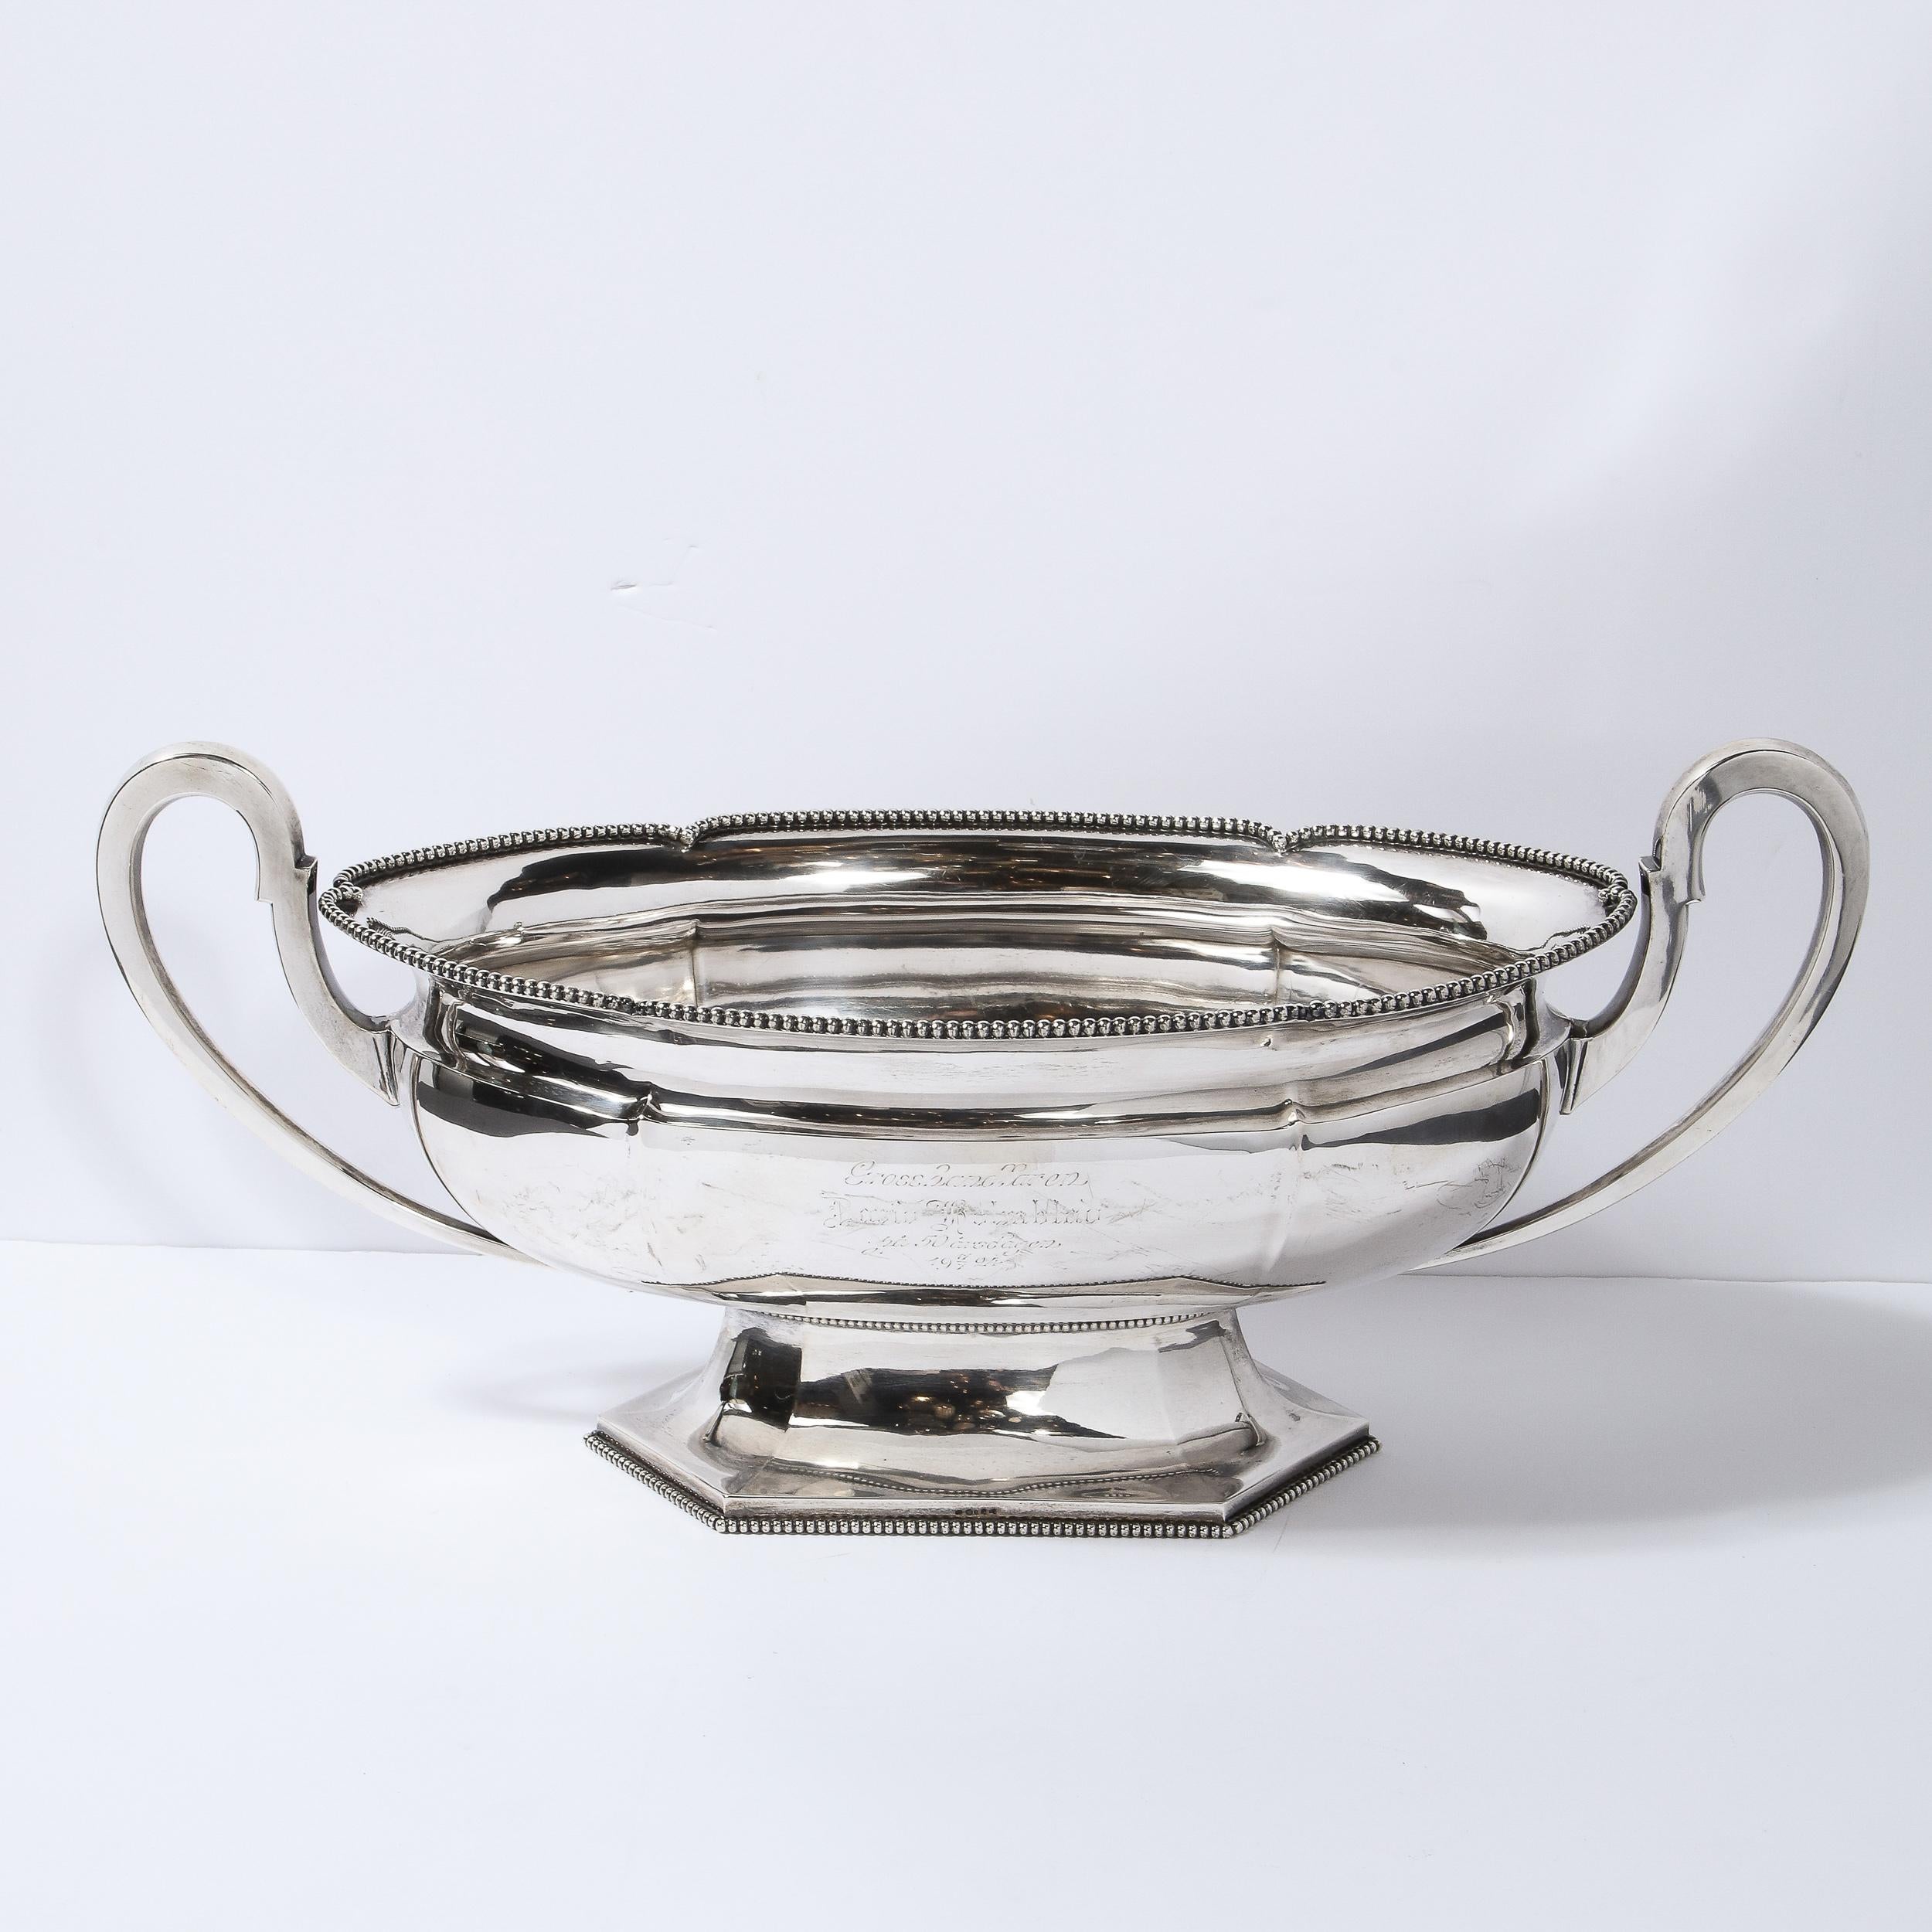 Cet élégant bol à trophée Art déco a été réalisé en Suède en 1924. Il présente un corps ovale sculptural reposant sur une base hexagonale à facettes avec des détails perlés sur le pourtour, le tout en métal argenté brillant. Le haut de la pièce est